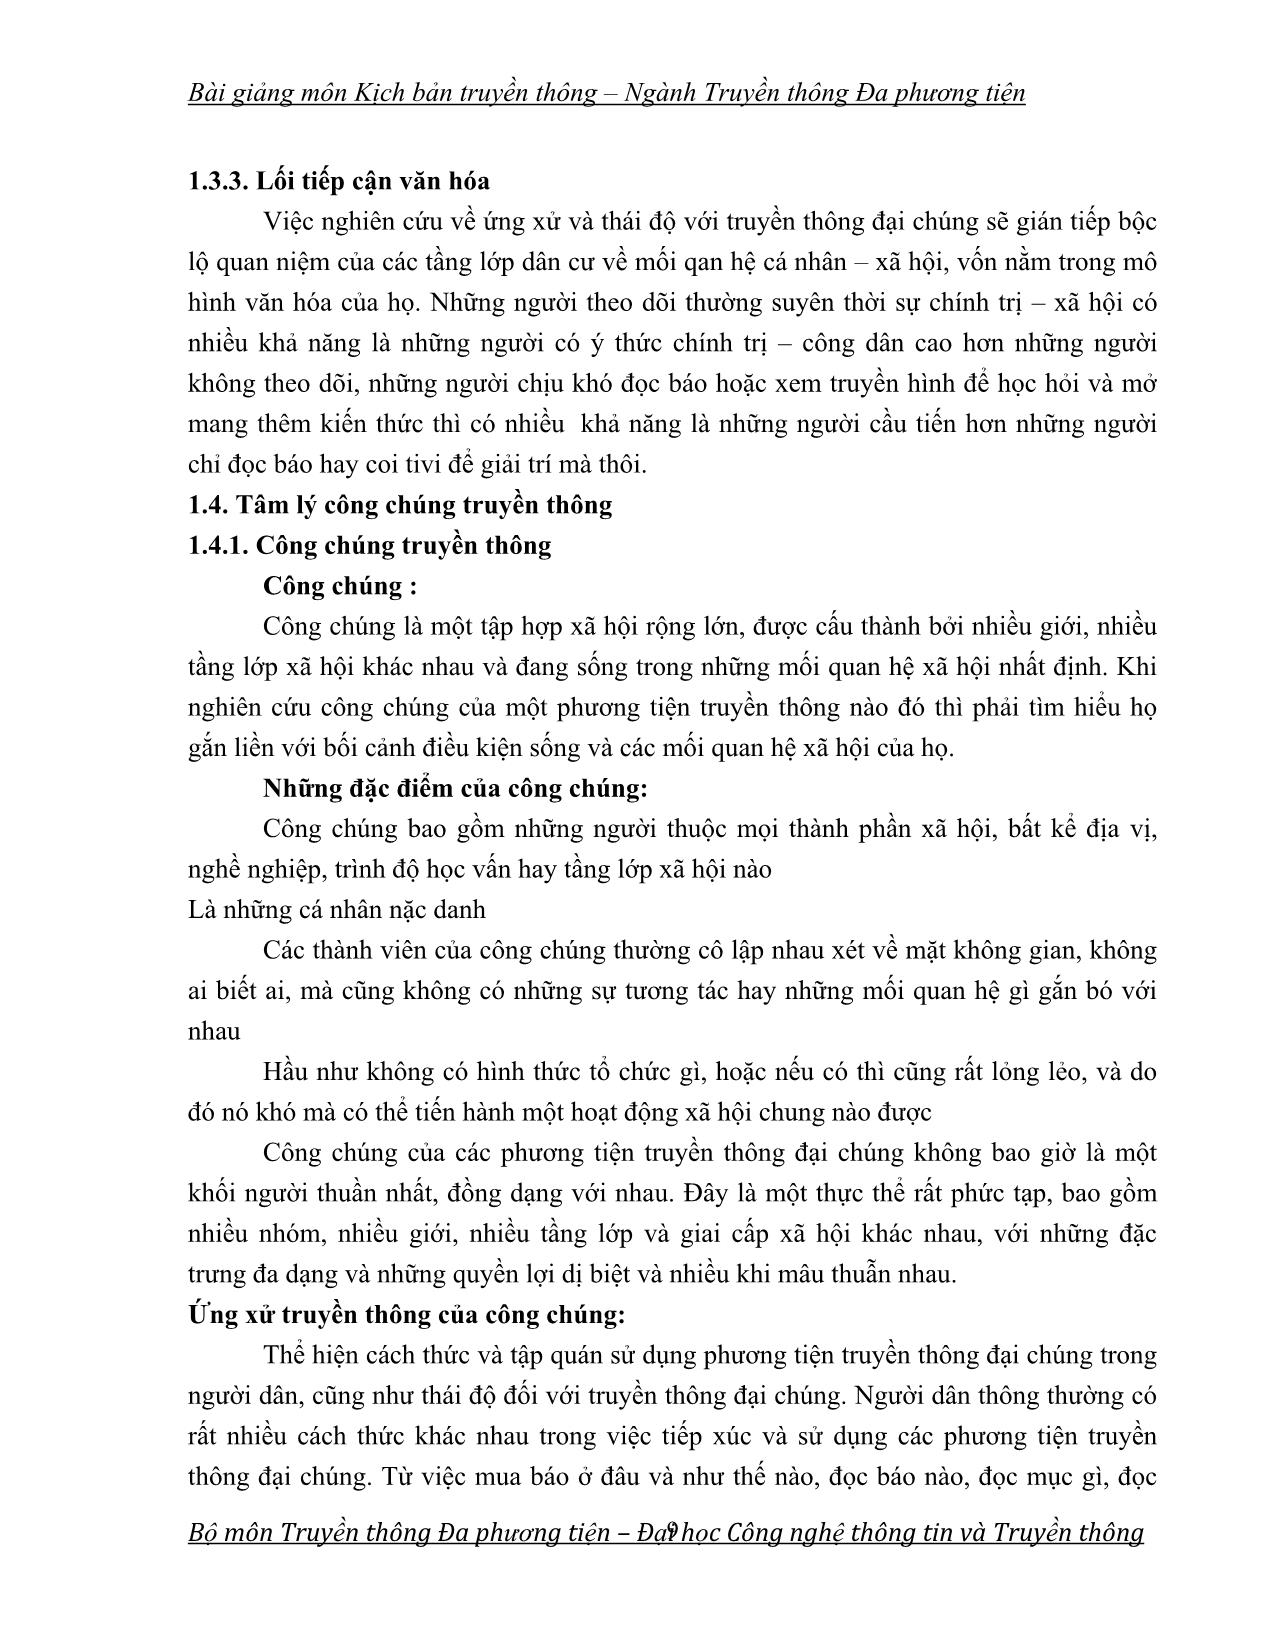 Bài giảng Kịch bản truyền thông (Phần 1) trang 9